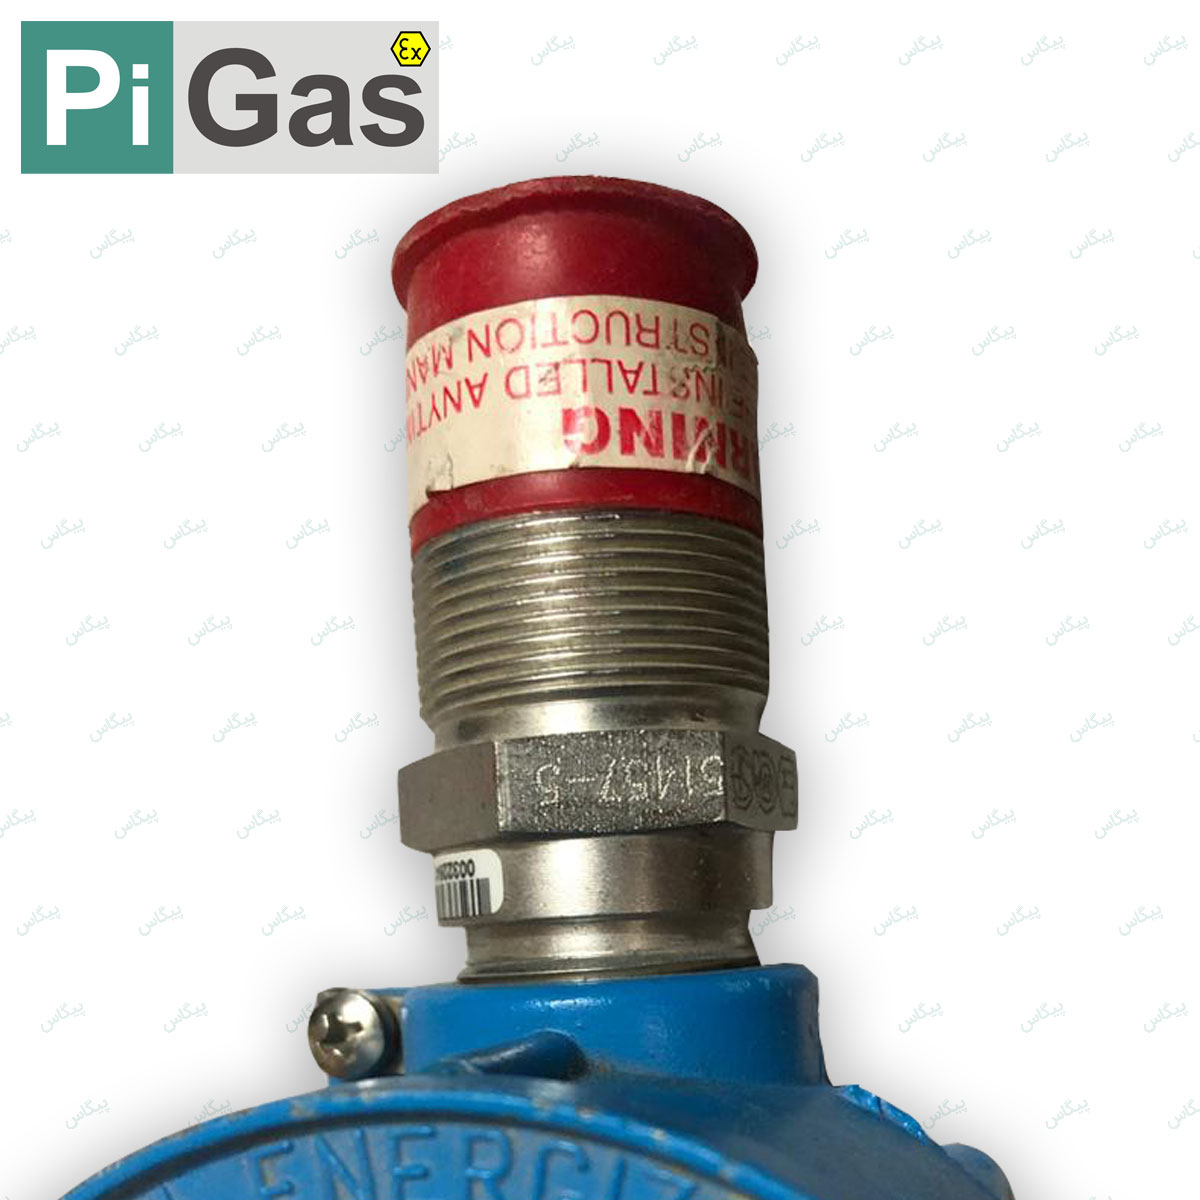 تصویر سنسور گاز General Monitors, H2S با شماره فنی 5-51457 